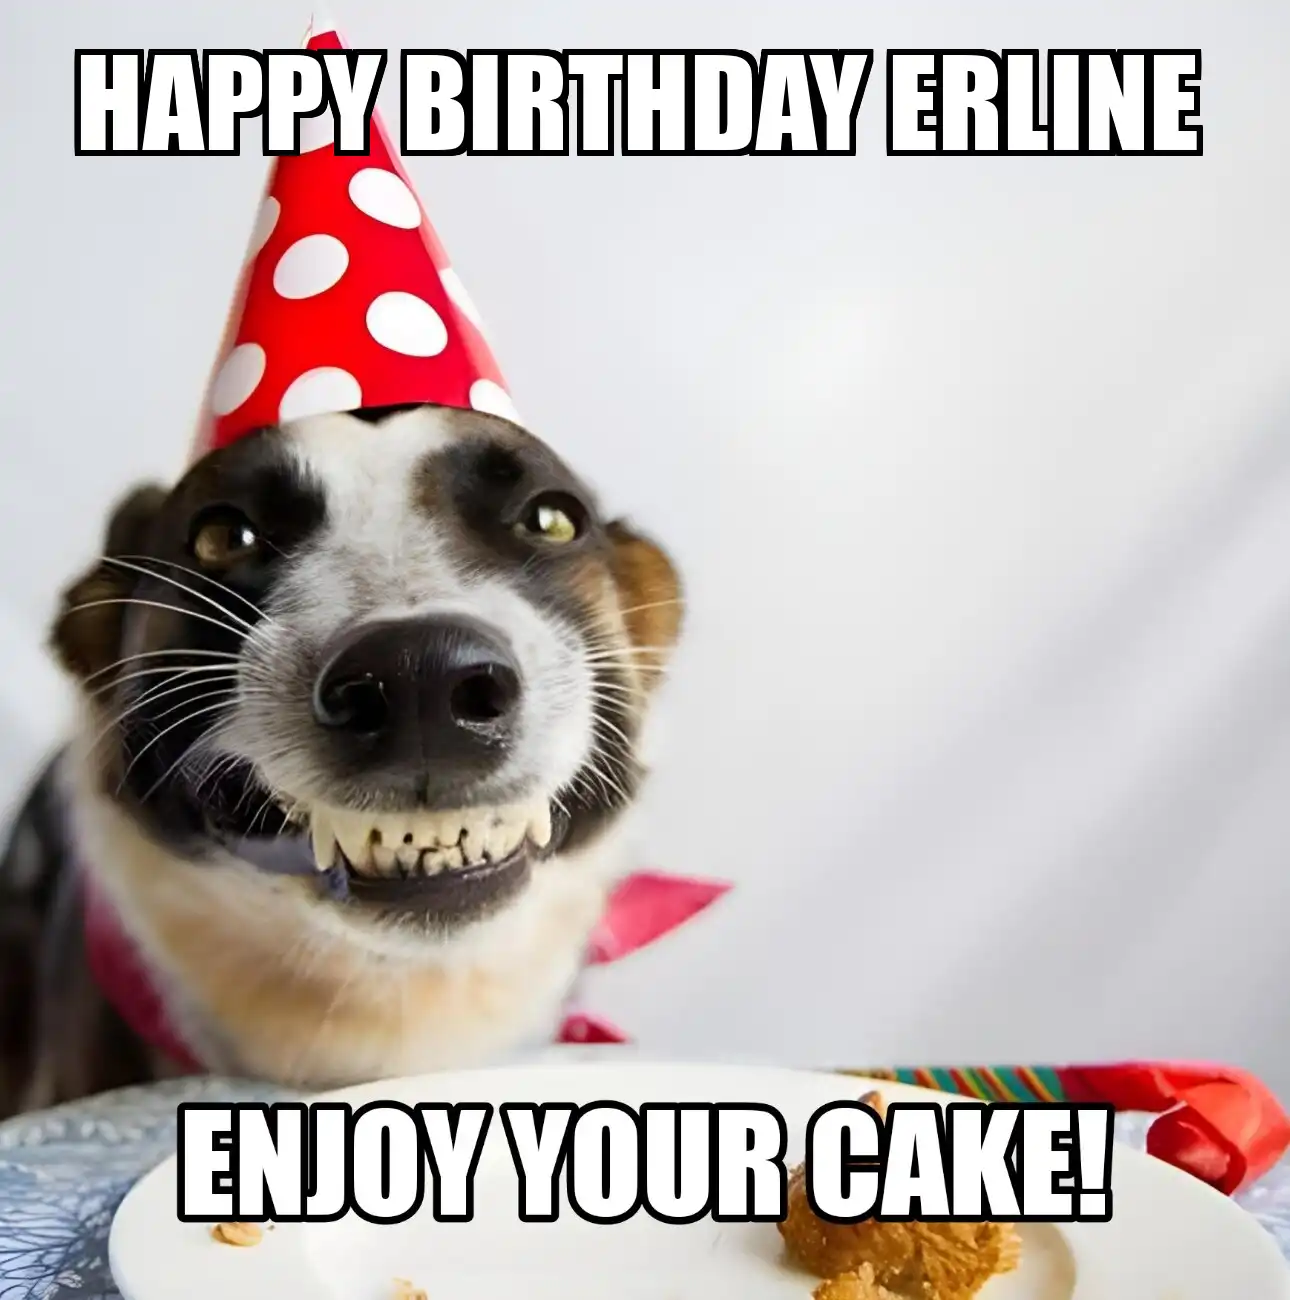 Happy Birthday Erline Enjoy Your Cake Dog Meme